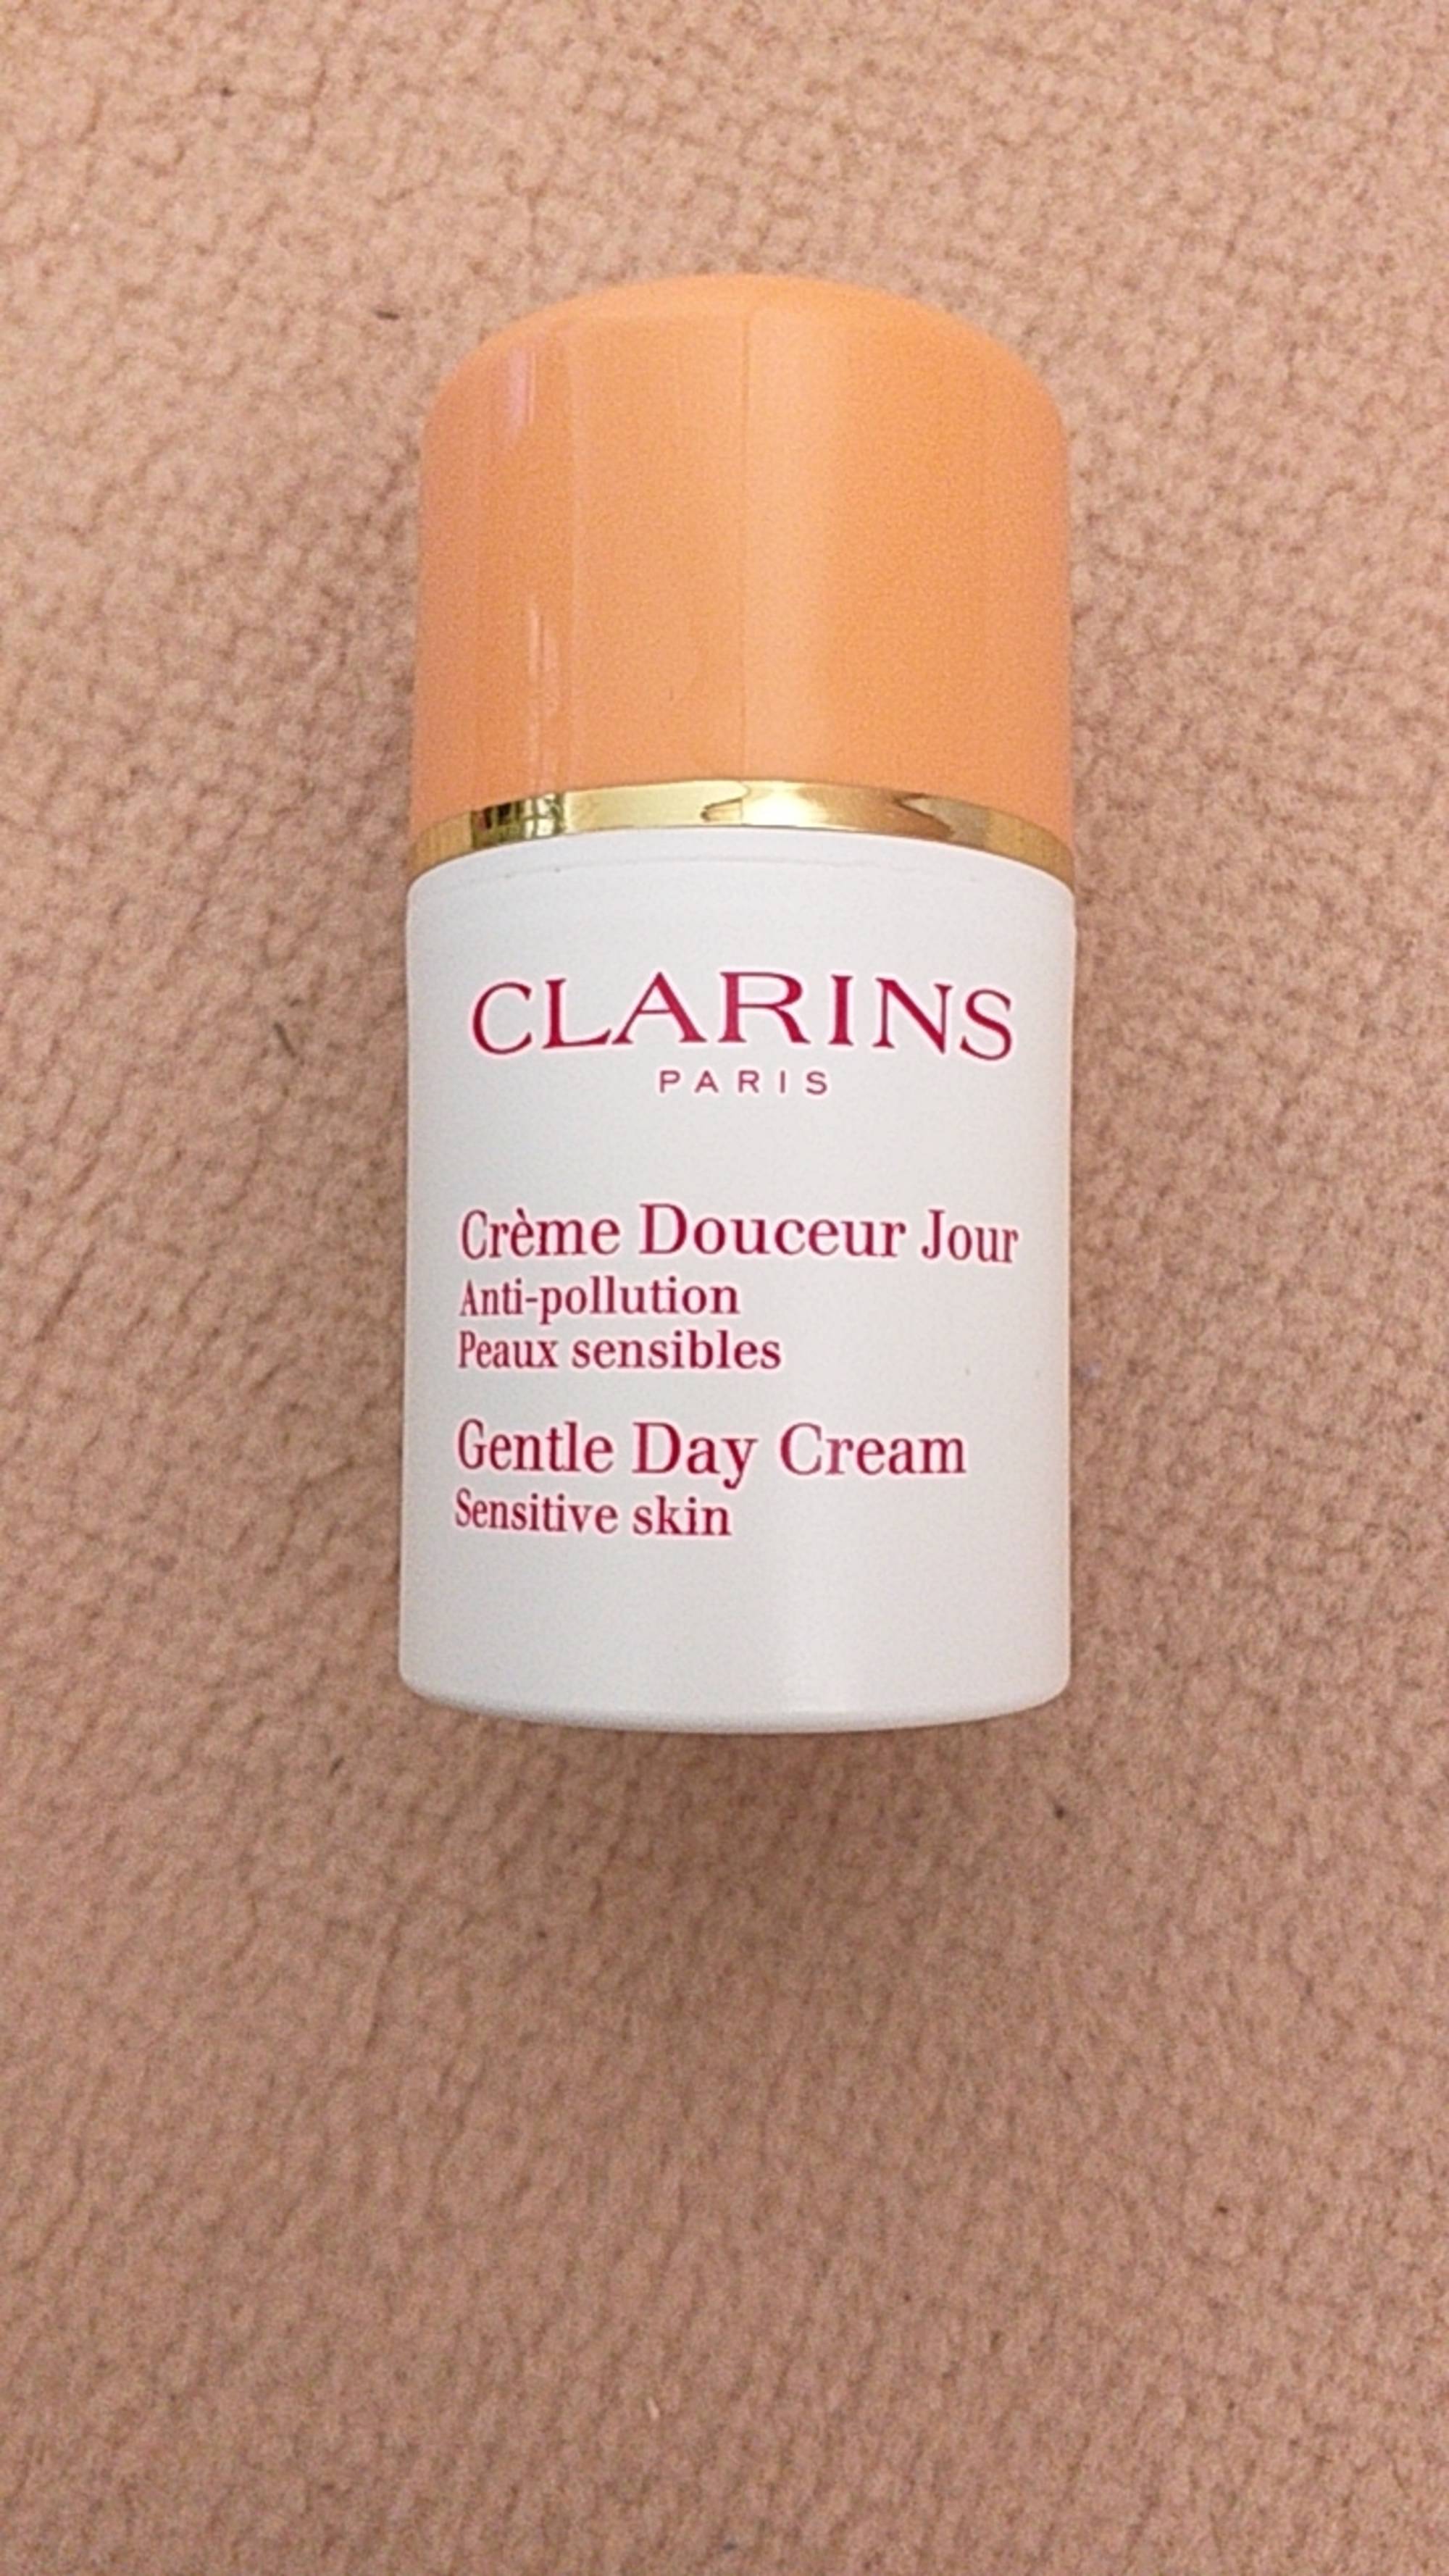 CLARINS - Crème douceur jour 